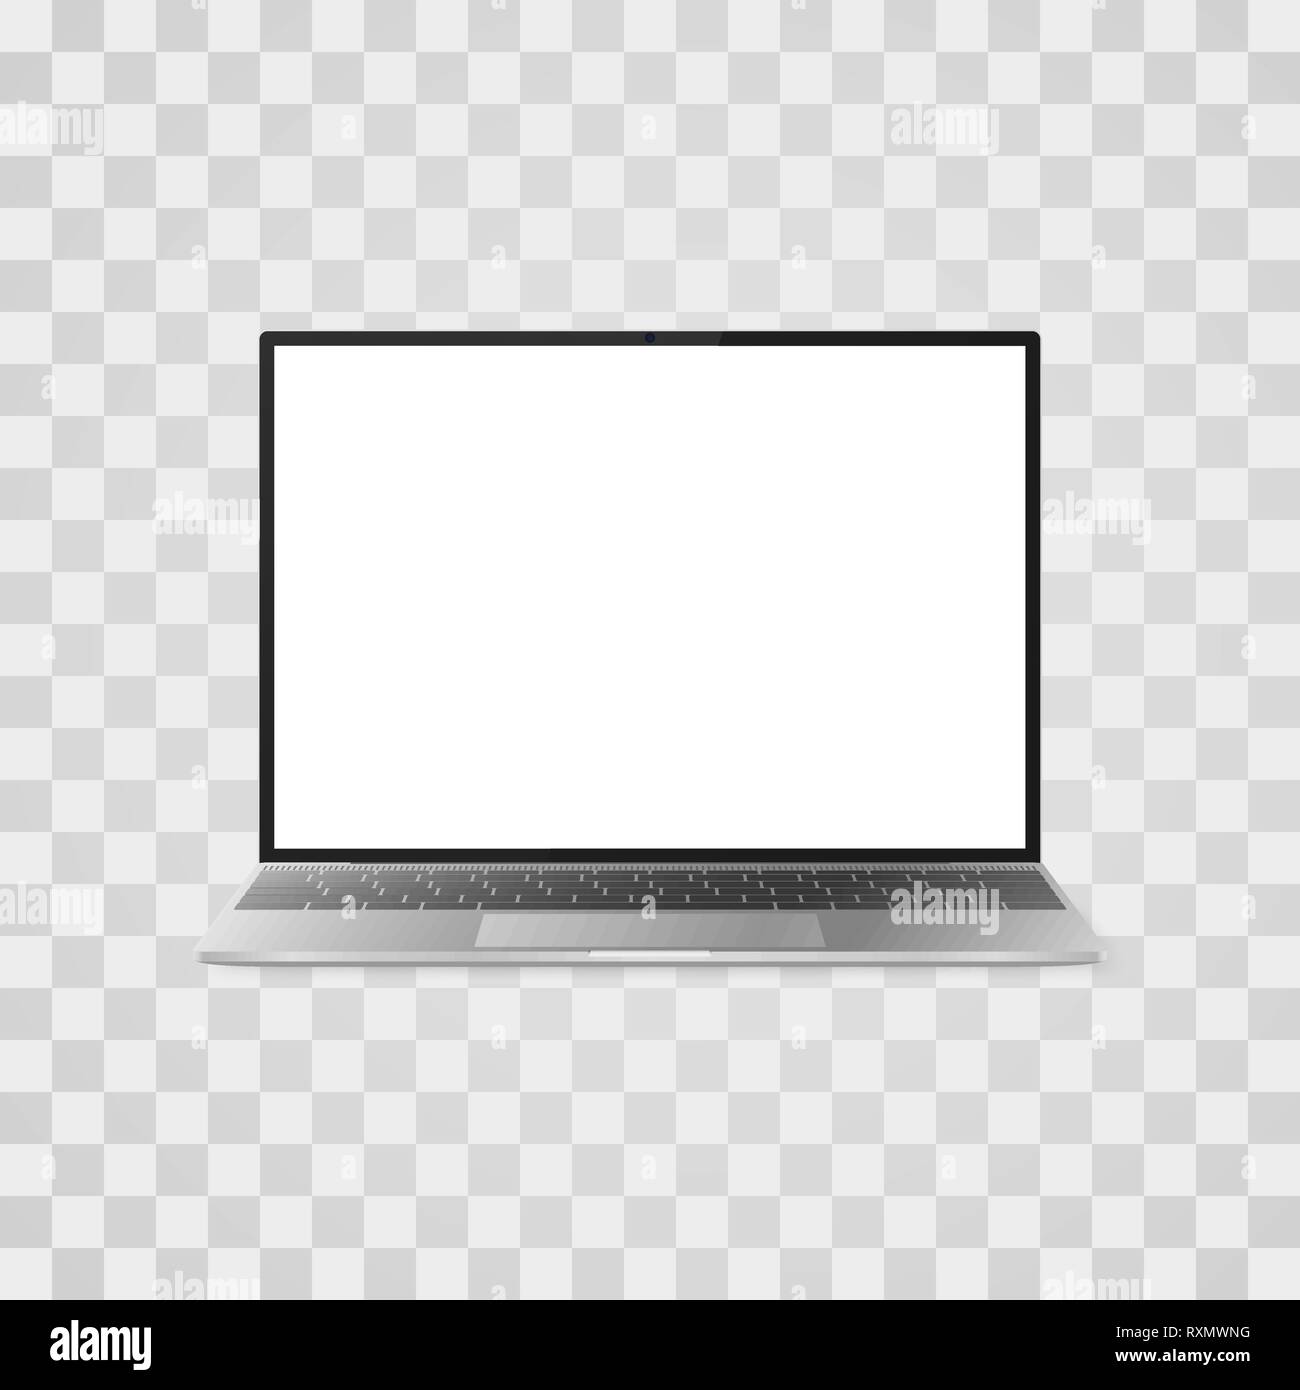 Realistische laptop Mock up auf transparentem Hintergrund. Laptop mit weißer Bildschirm Vorderansicht. Vector Illustration Stock Vektor